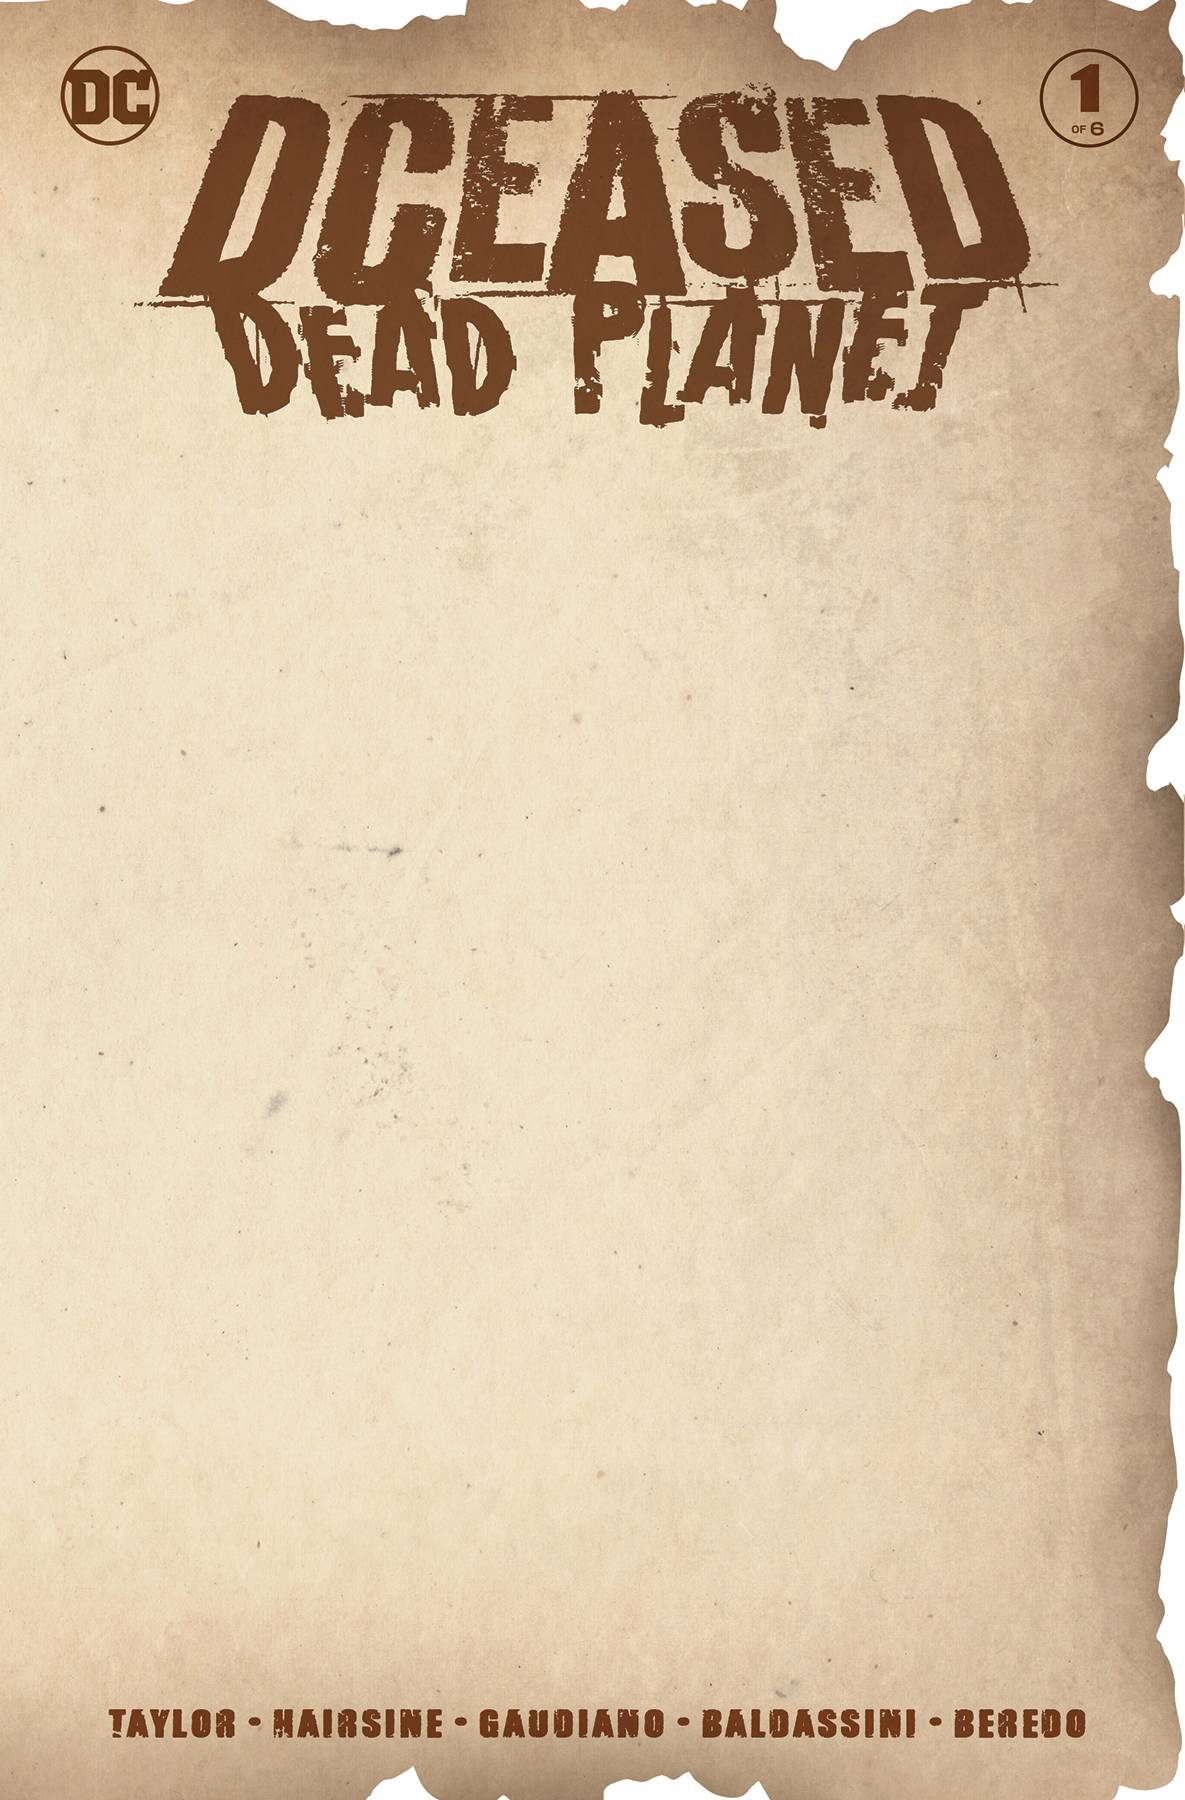 DCEASED DEAD PLANET #1 (OF 6) BLANK VAR ED